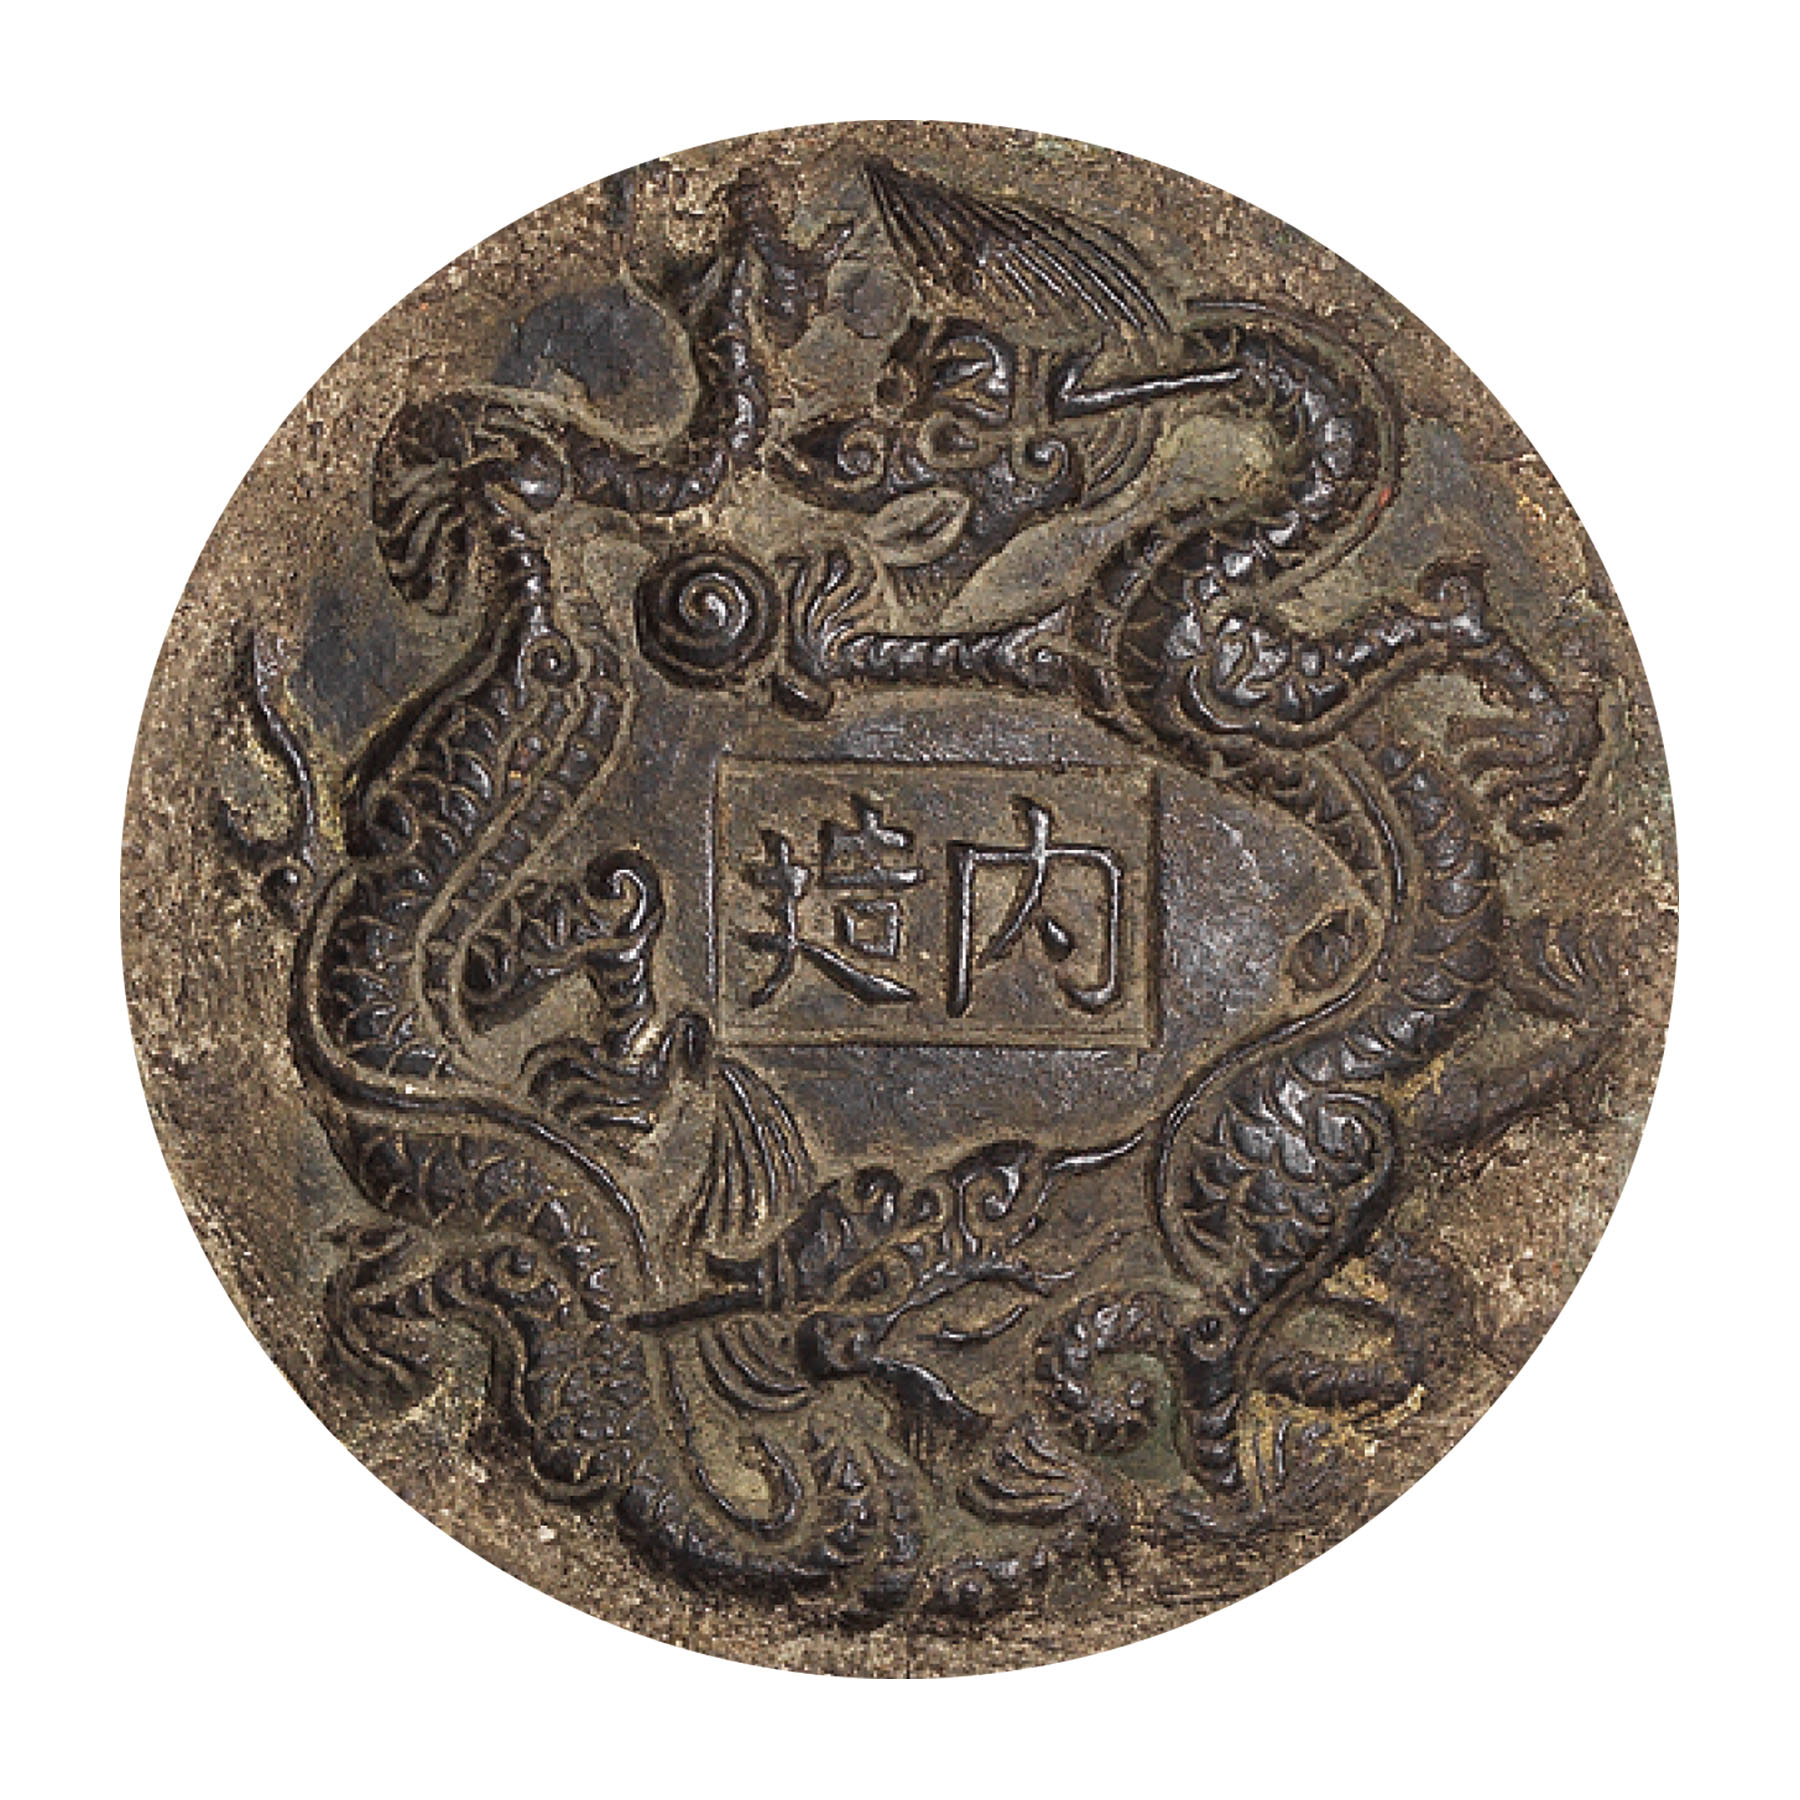 明十六/十七世紀 鎏金銅花鳥纏枝蓮紋雙龍耳瓶「內造」款